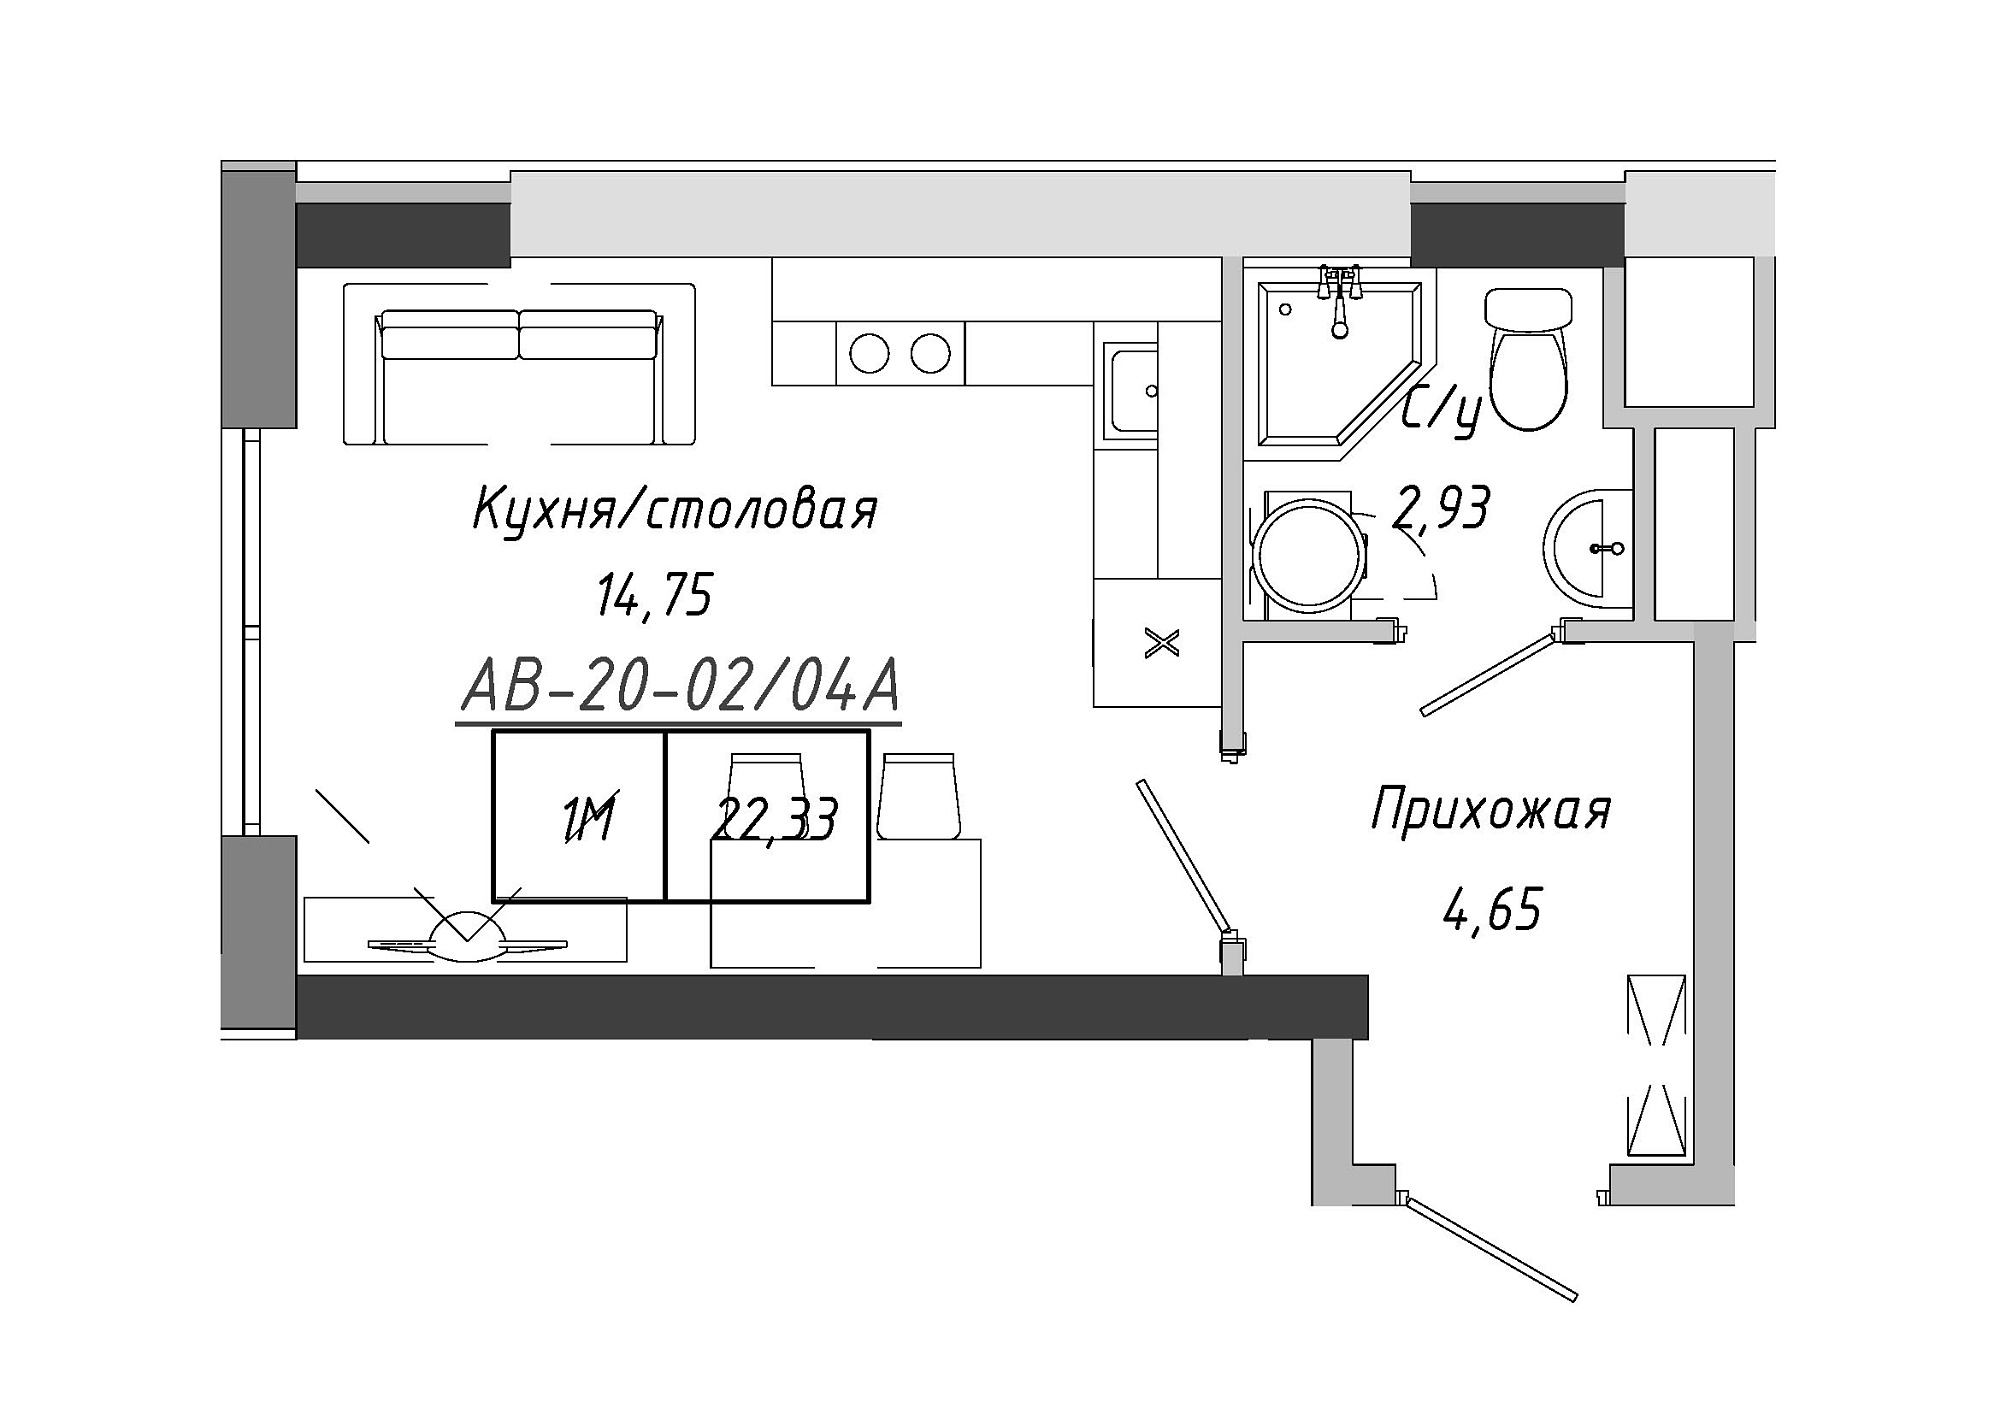 Планування Smart-квартира площею 22.33м2, AB-20-02/0004а.